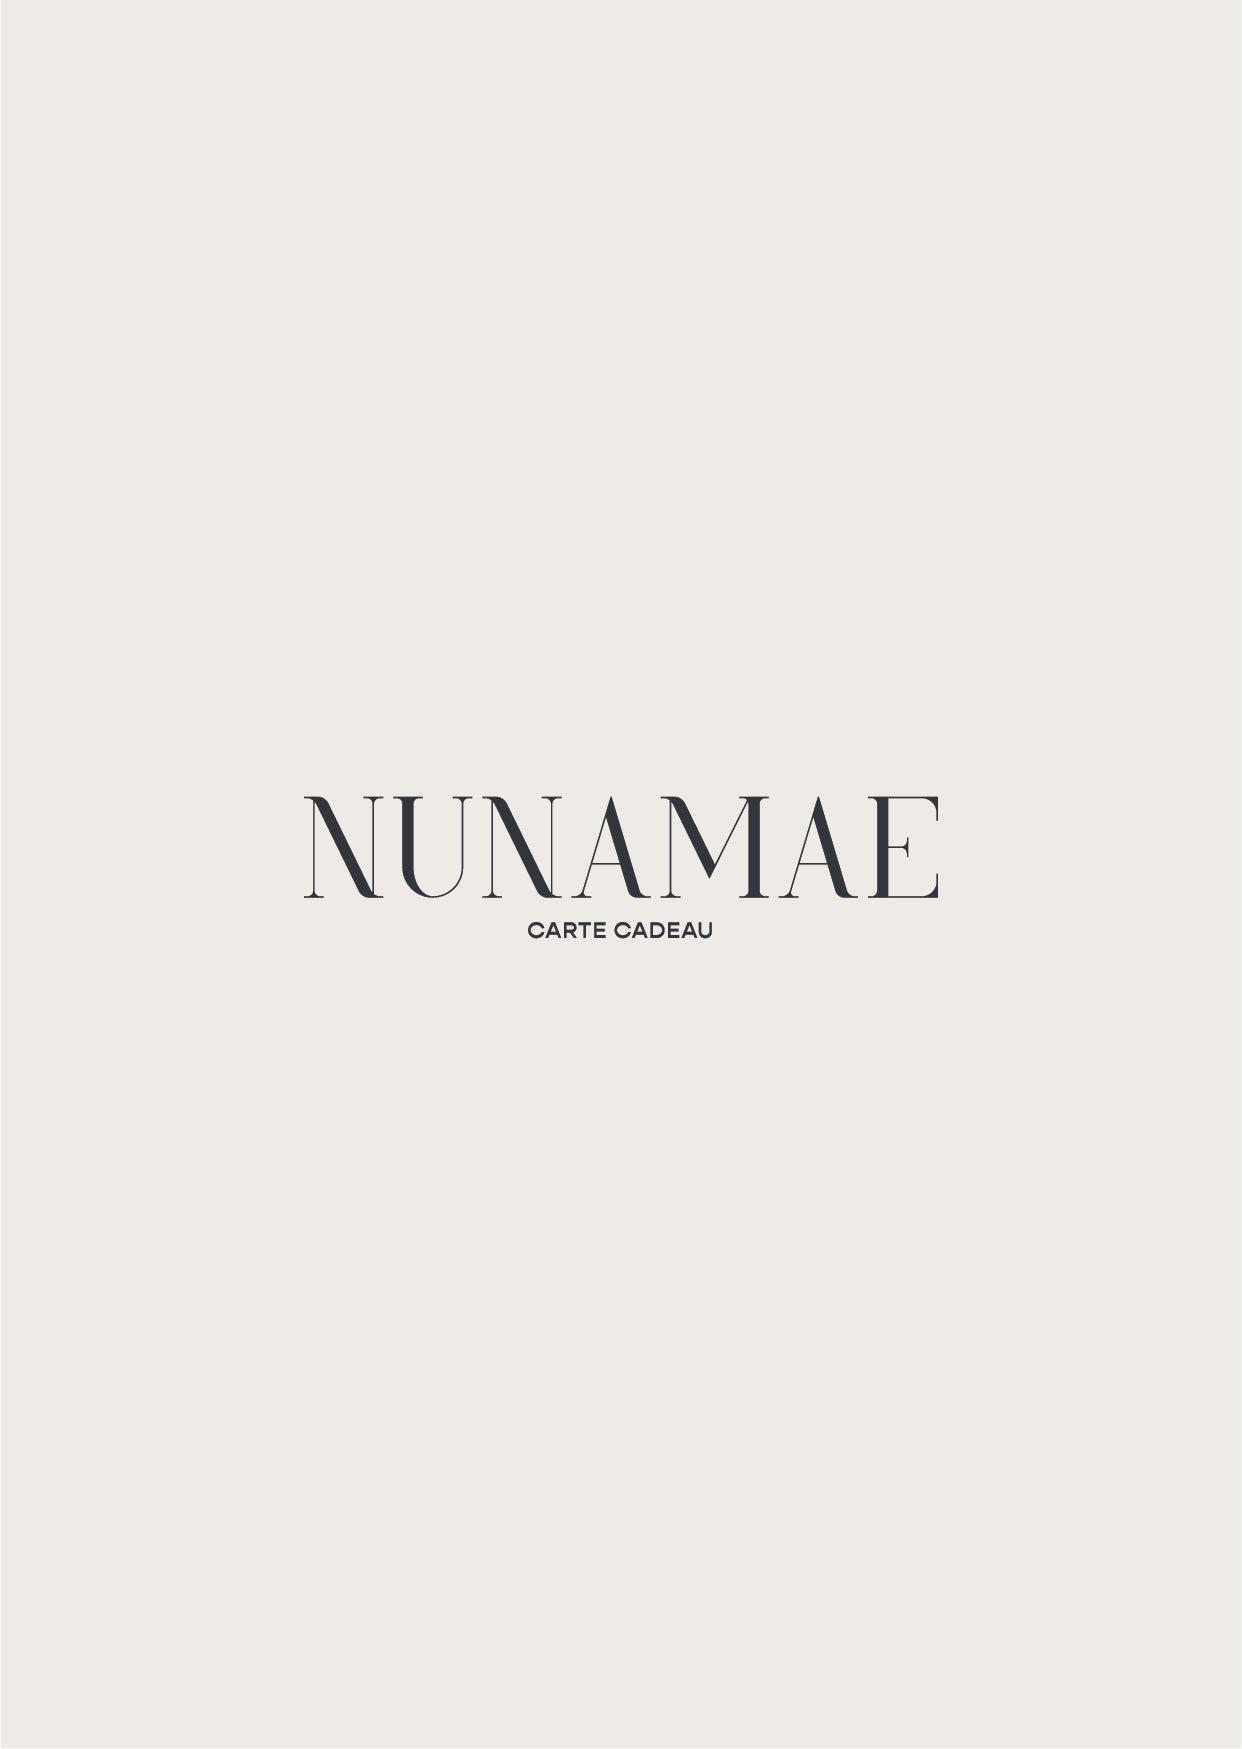 Carte Cadeau Nunamae - Nunamae